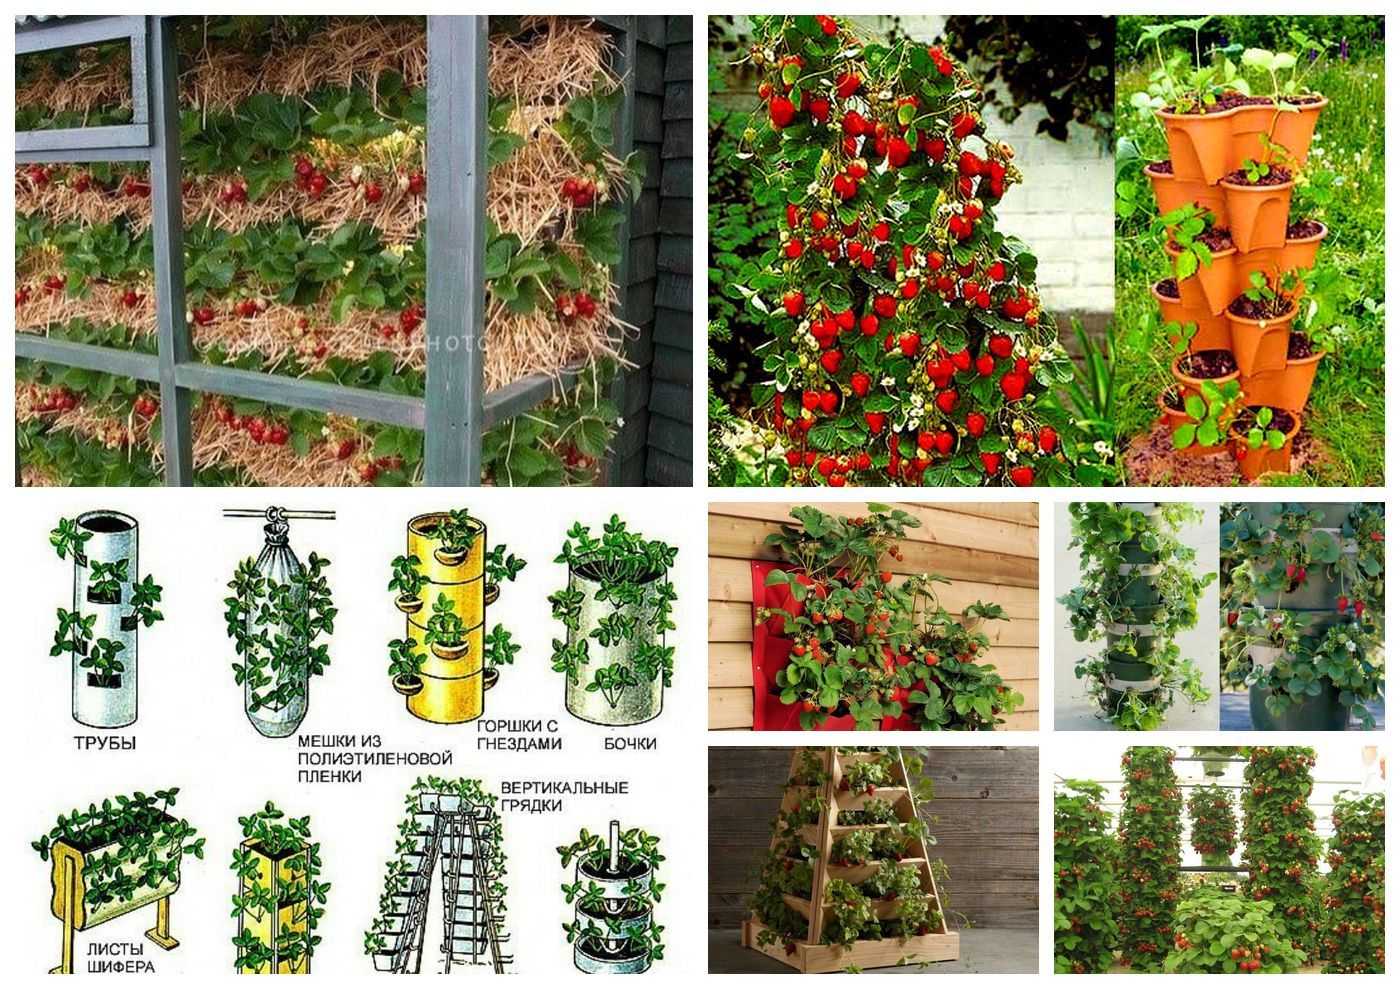 Вертикальные грядки: для овощей, ягод, зелени, цветов | фото